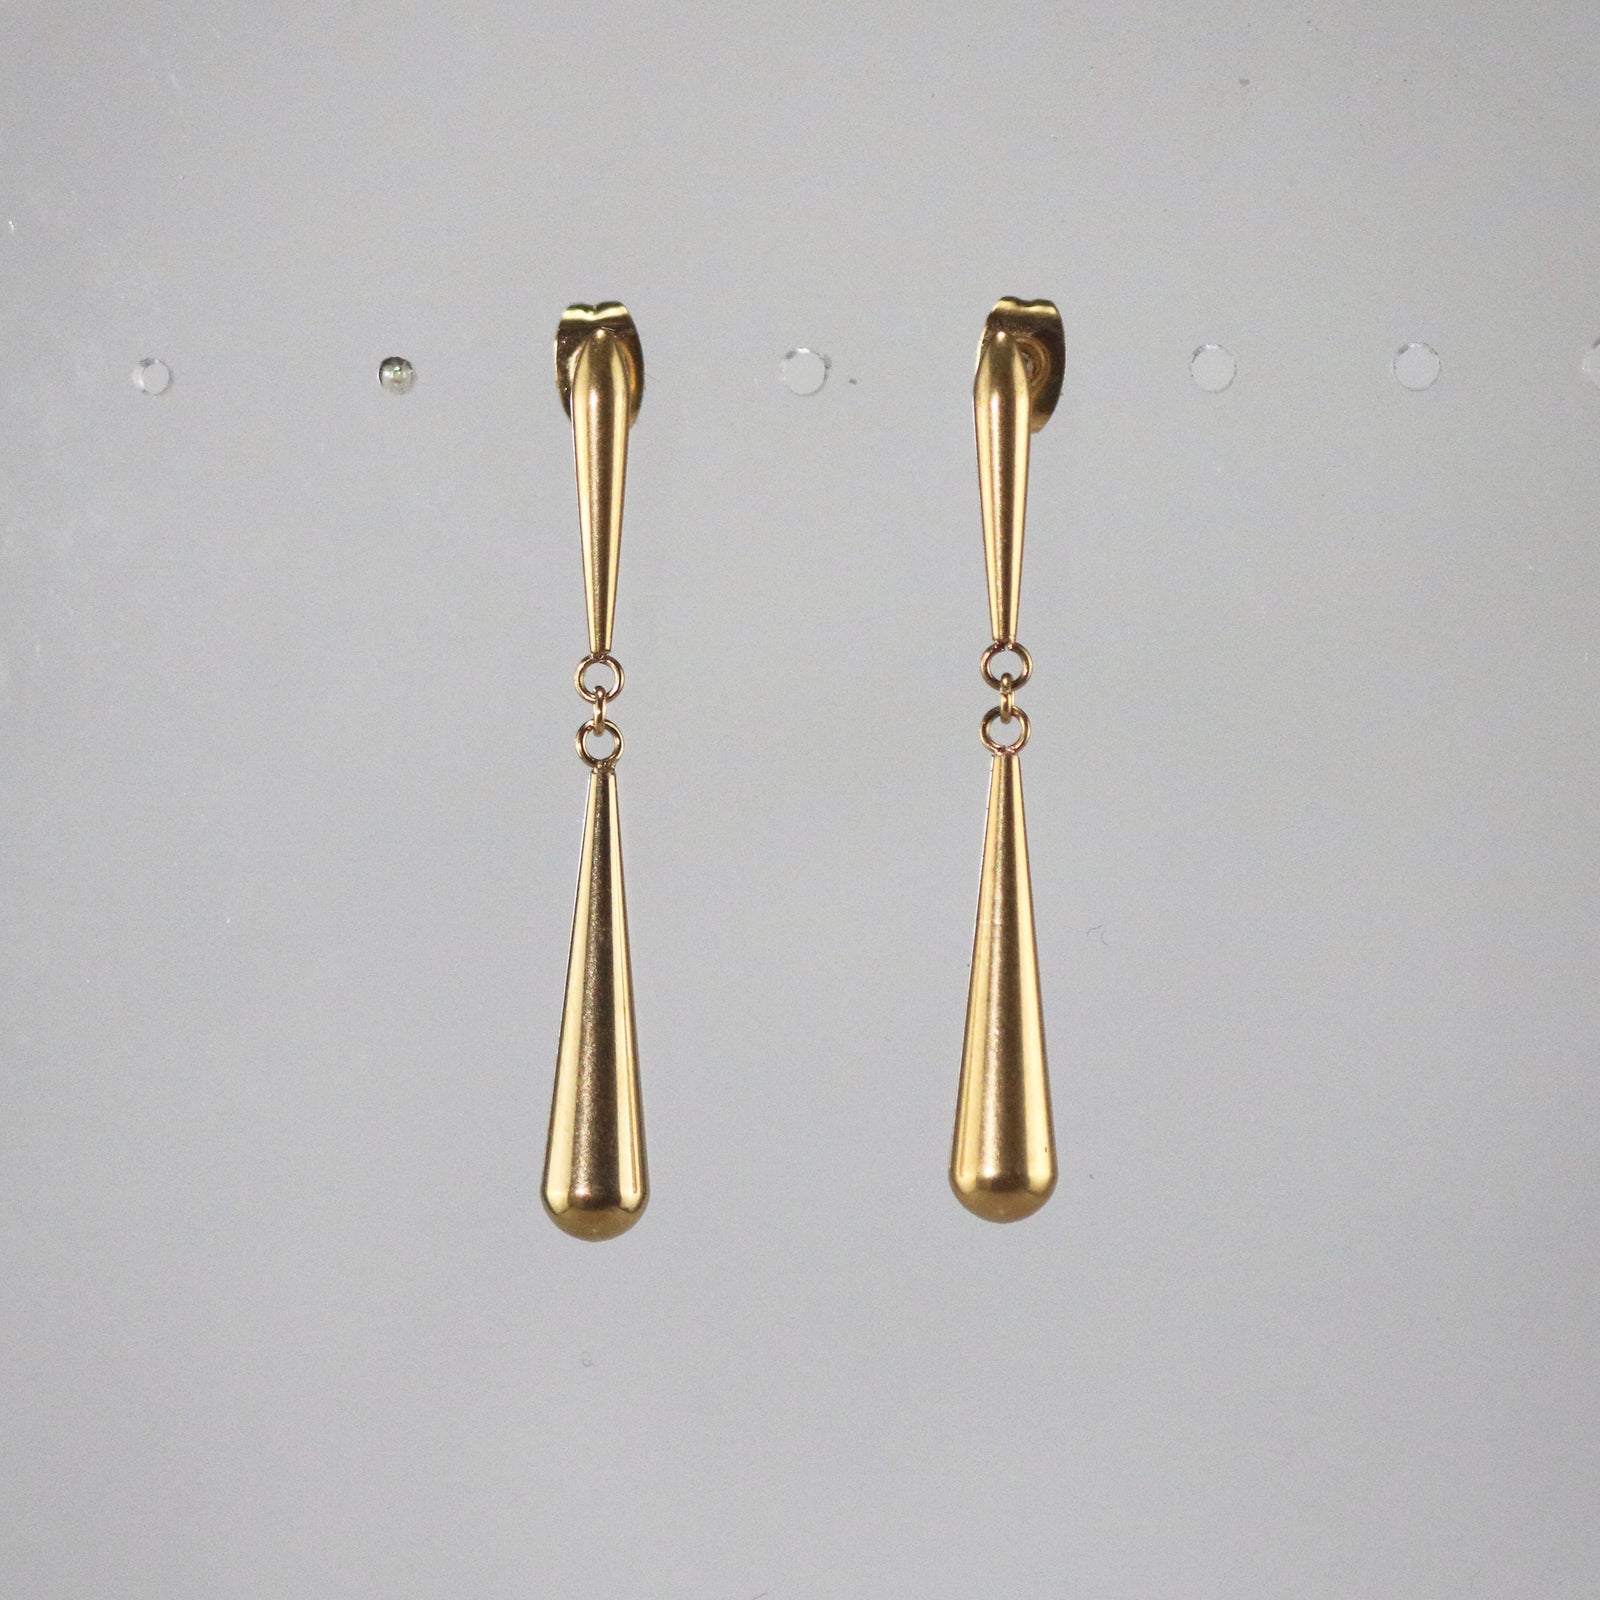 Meideya Jewelry long teardrop earrings